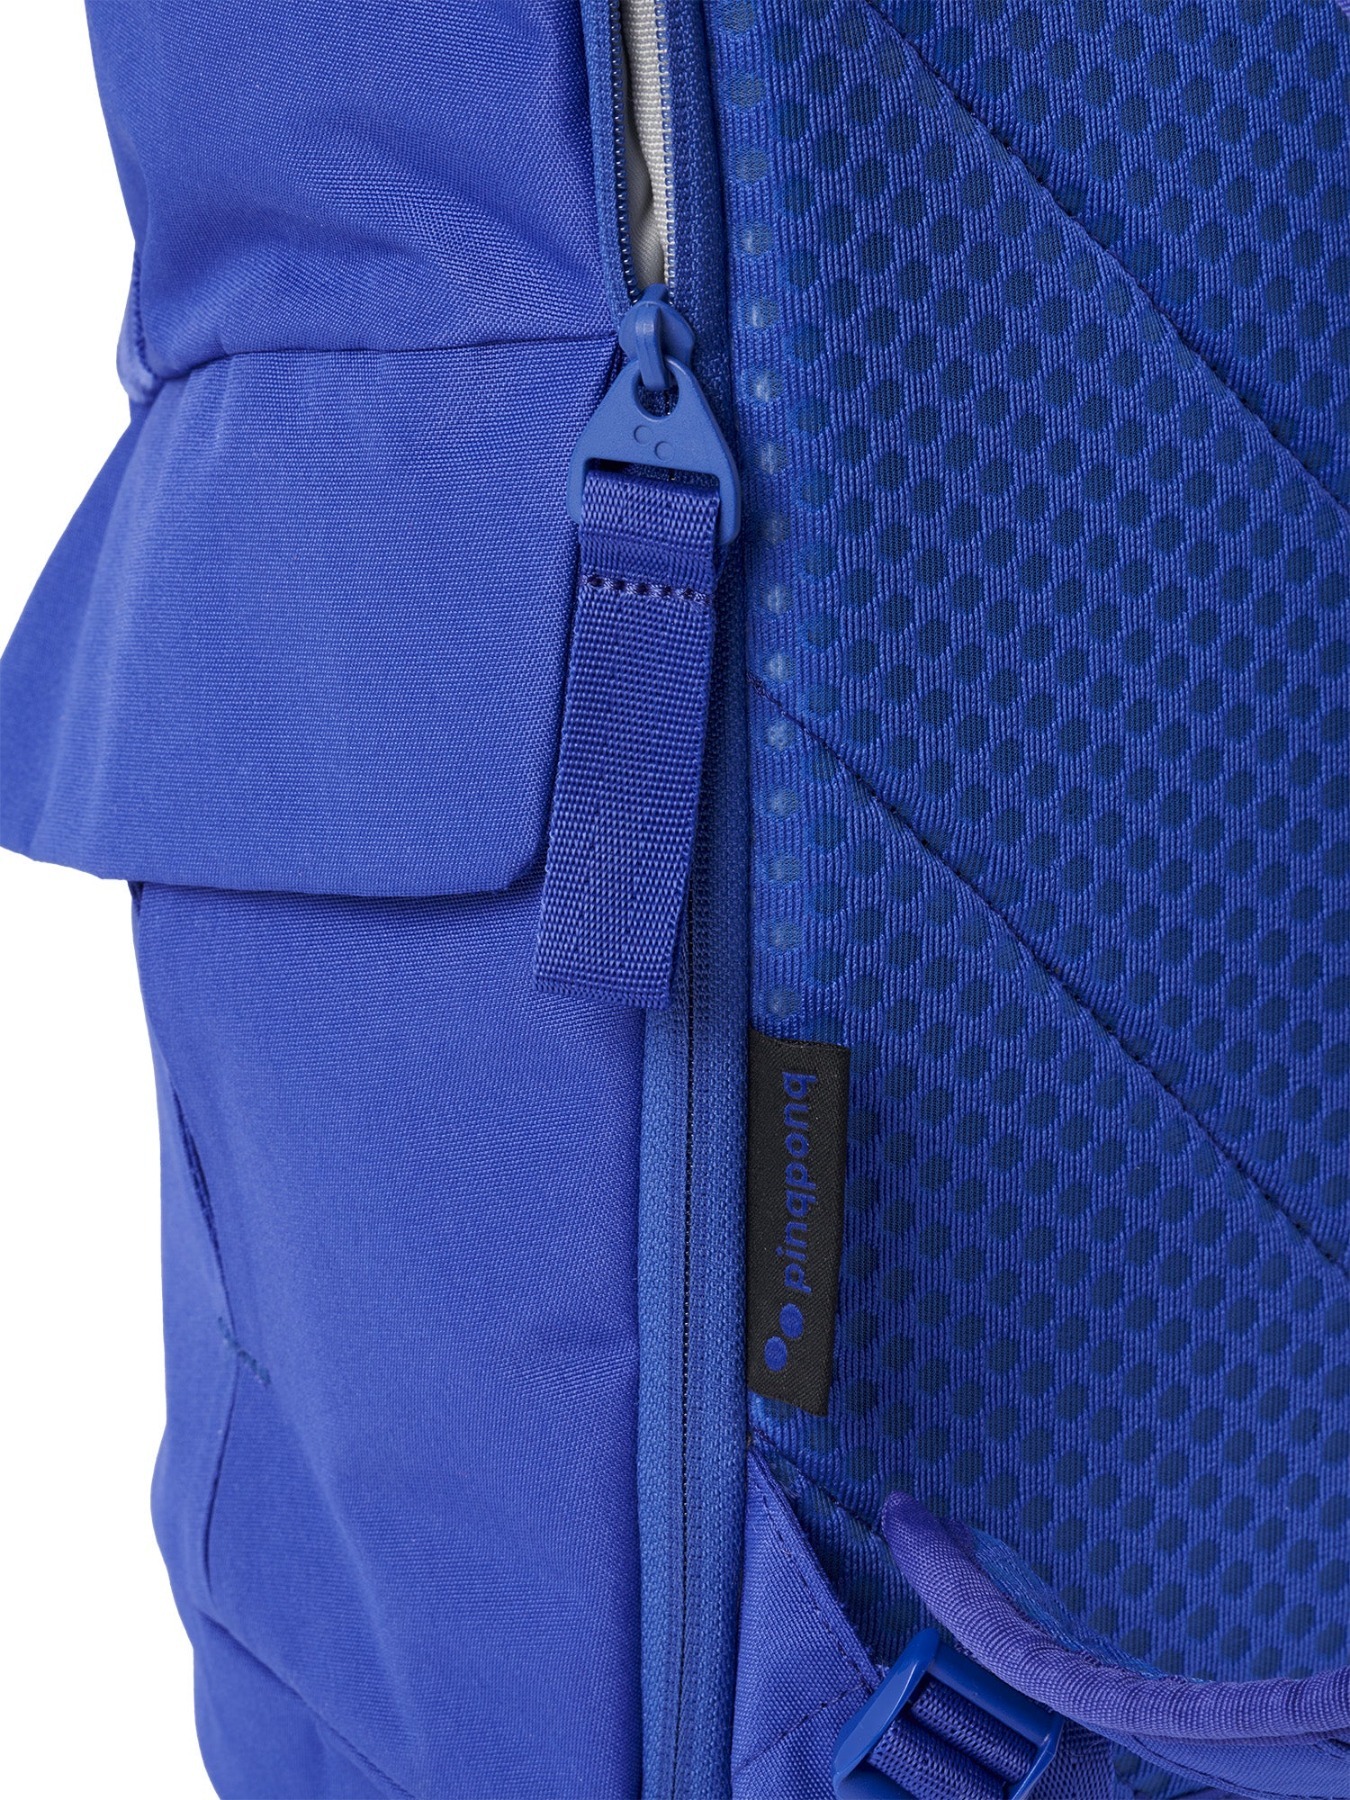 pinqponq Backpack KROSS - Poppy Blue 7